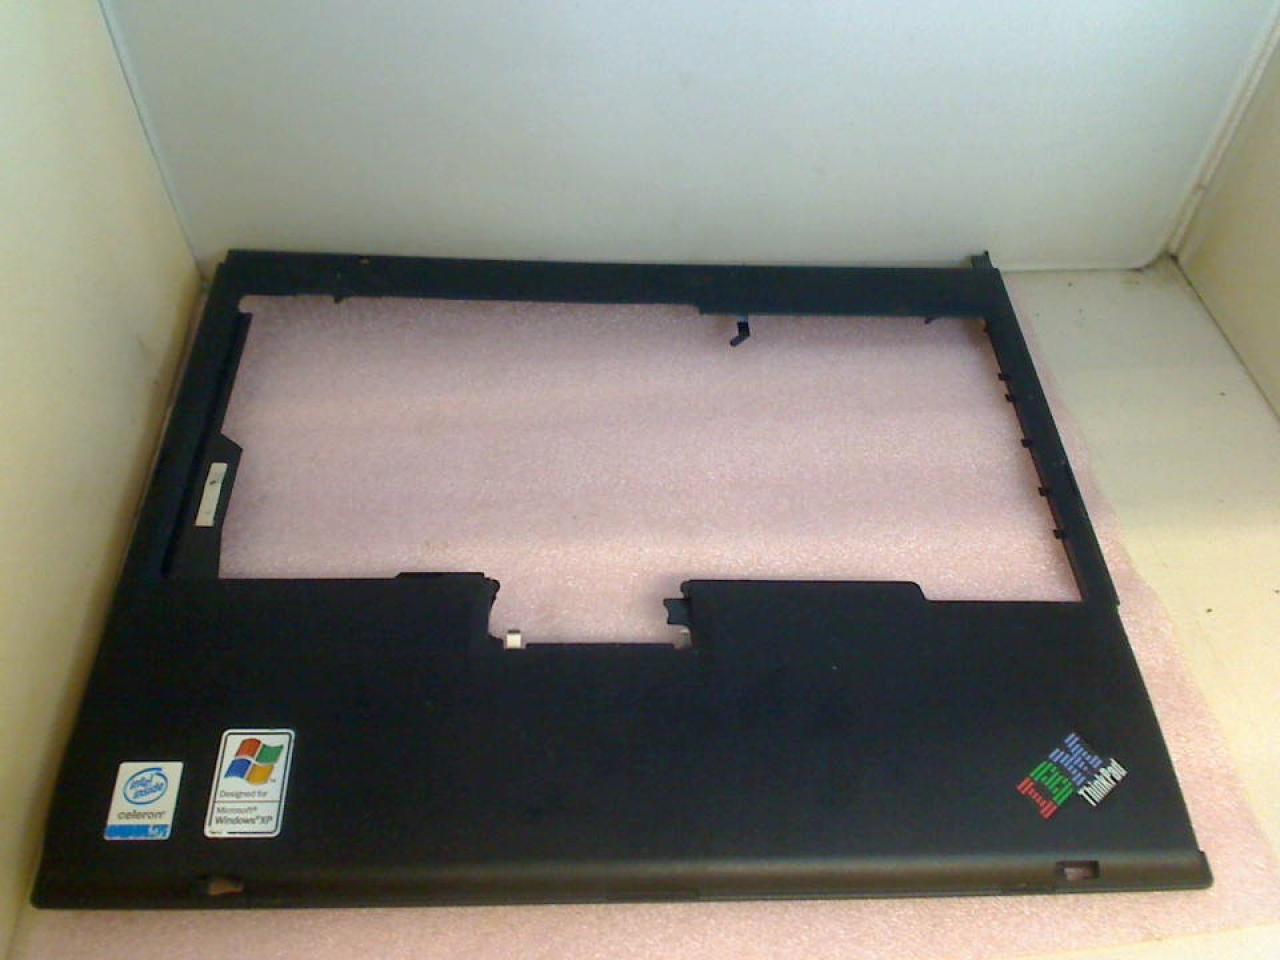 Gehäuse Oberschale Handauflage ohne Touchpad IBM ThinkPad R50e 1834-47G